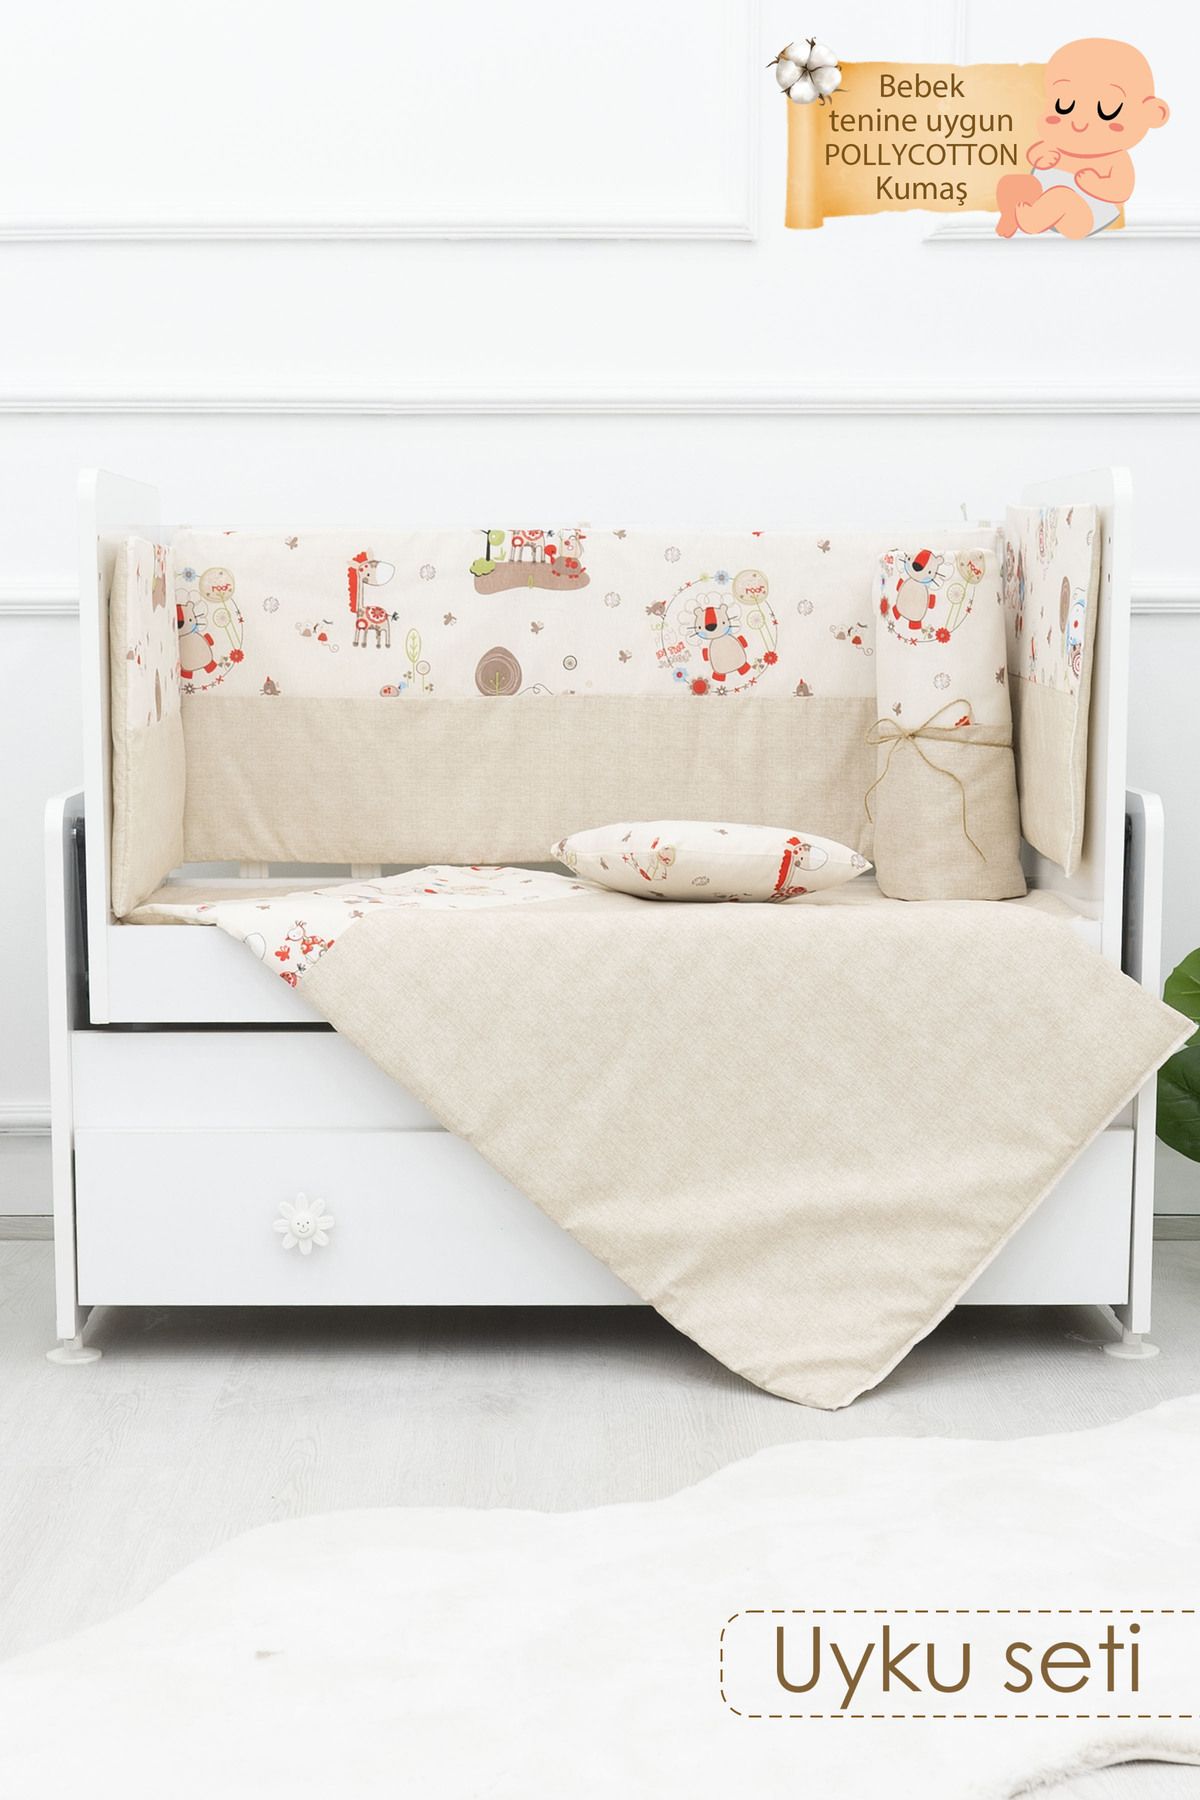 mordesign Bebek Uyku Seti, 60x120 cm Beşik Uyku Seti, 8 Parça Bebek Beşik Seti, Animal Serisi